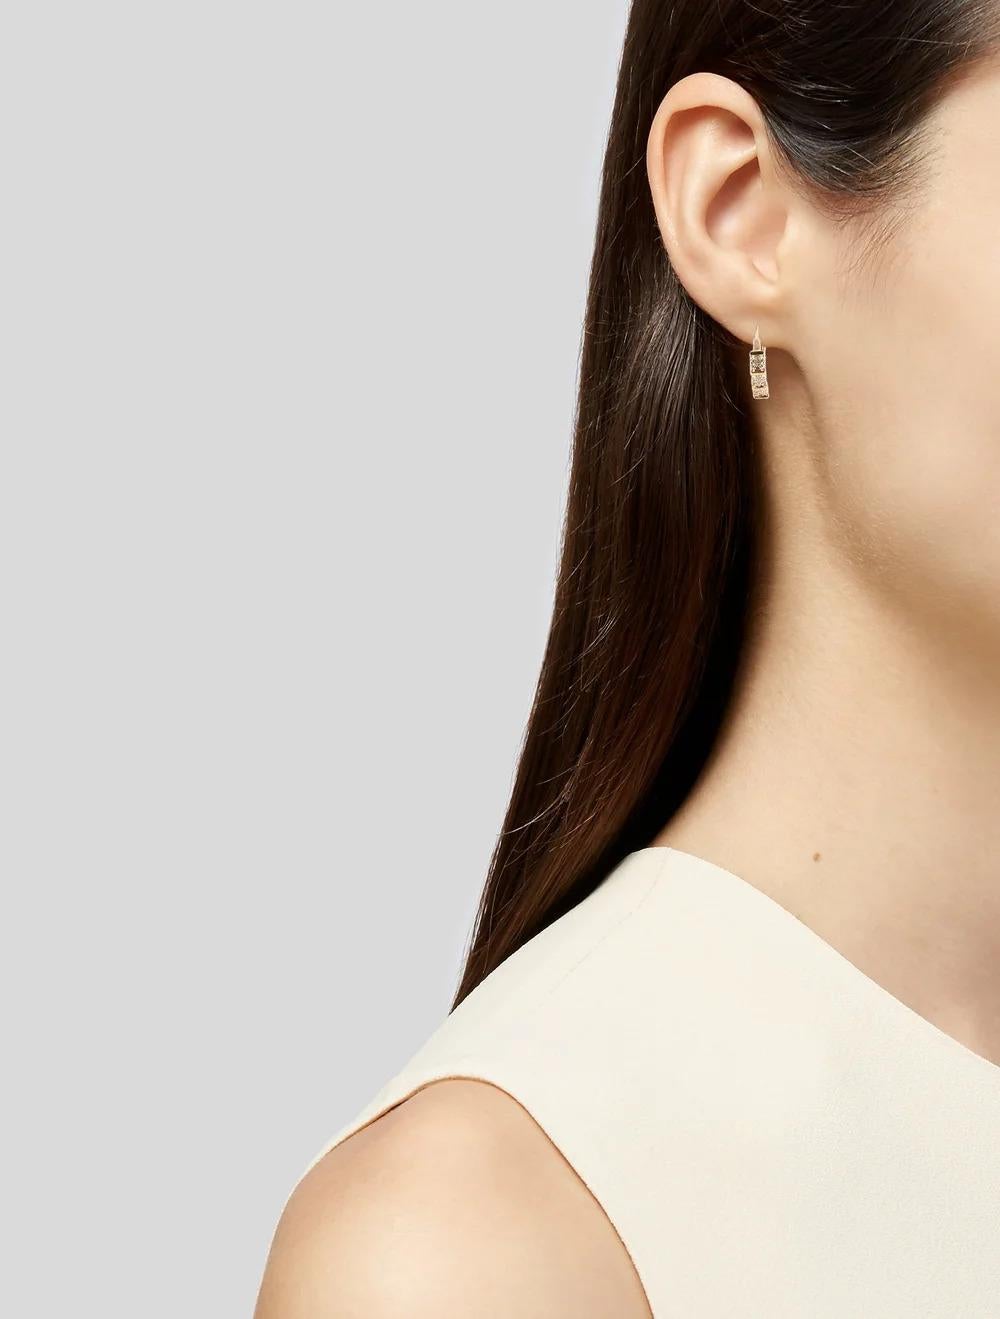 Single Cut 14K Diamond Hoop Earrings - Stunning & Elegant Statement Jewelry, Luxury Piece For Sale